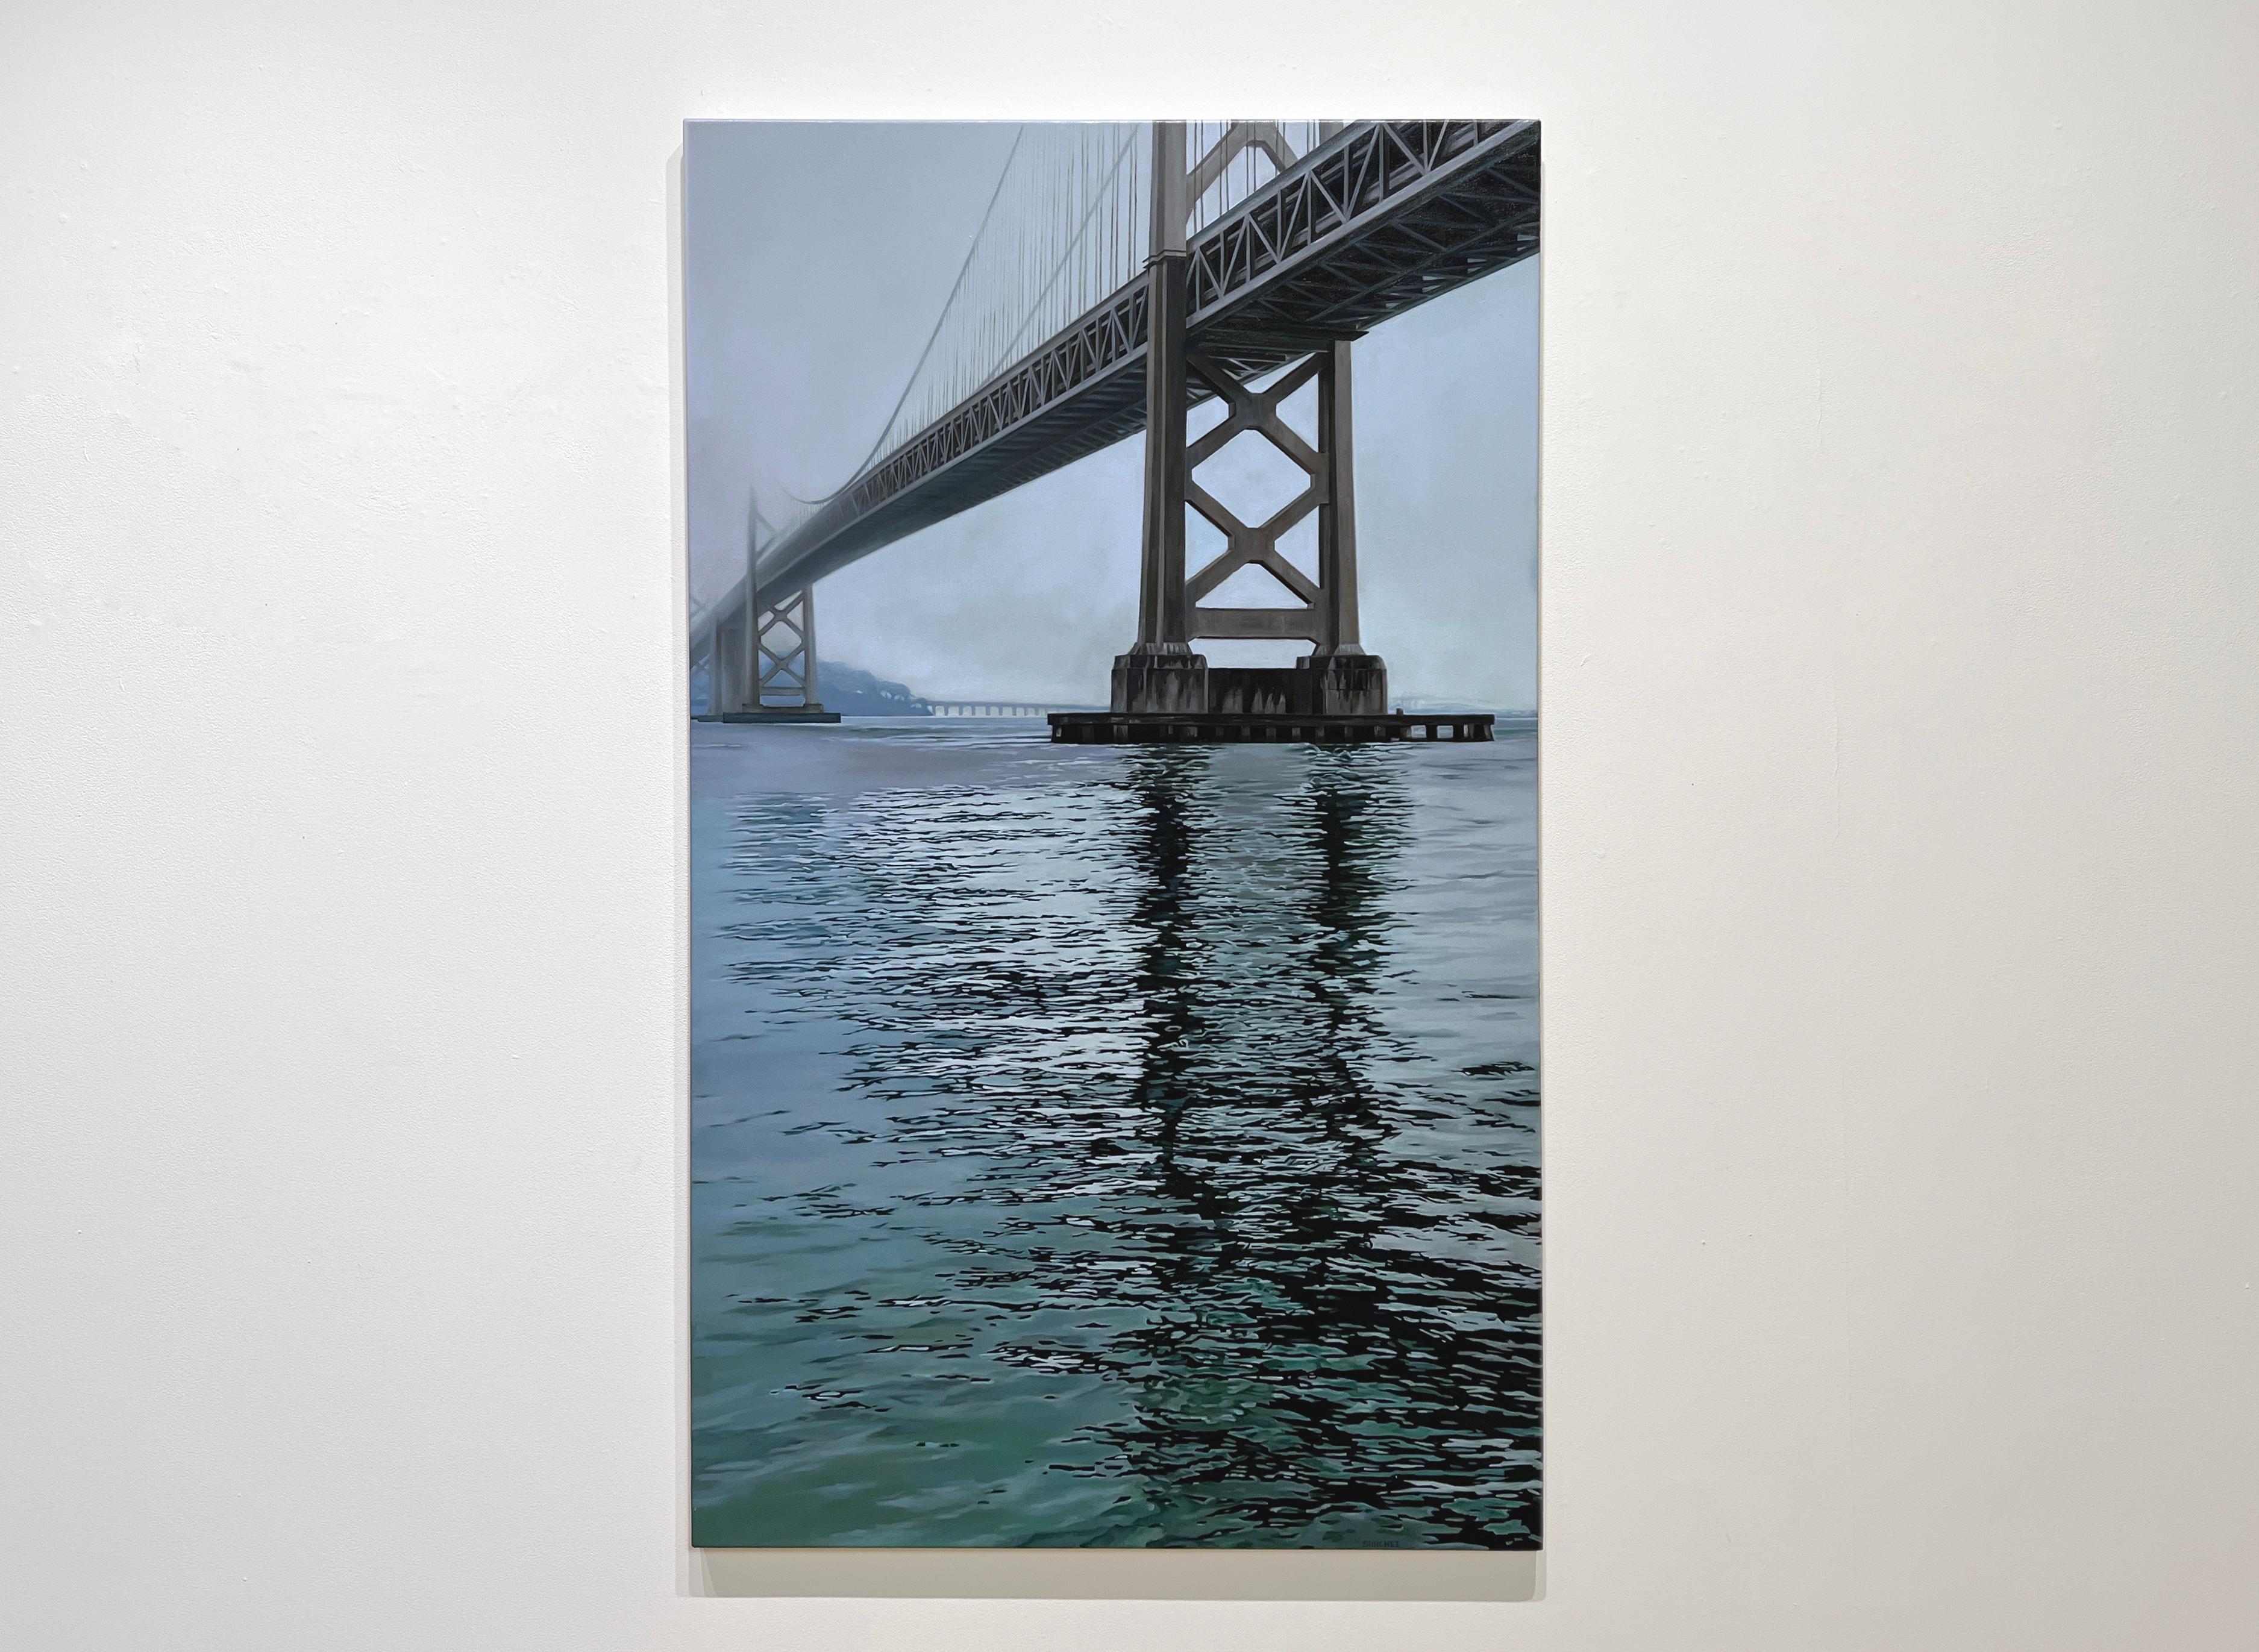 BAY BRIDGE – Zeitgenössischer Realismus / Südkoreanischer Künstler / kalifornische Wasserszene – Painting von Sunghee Jang